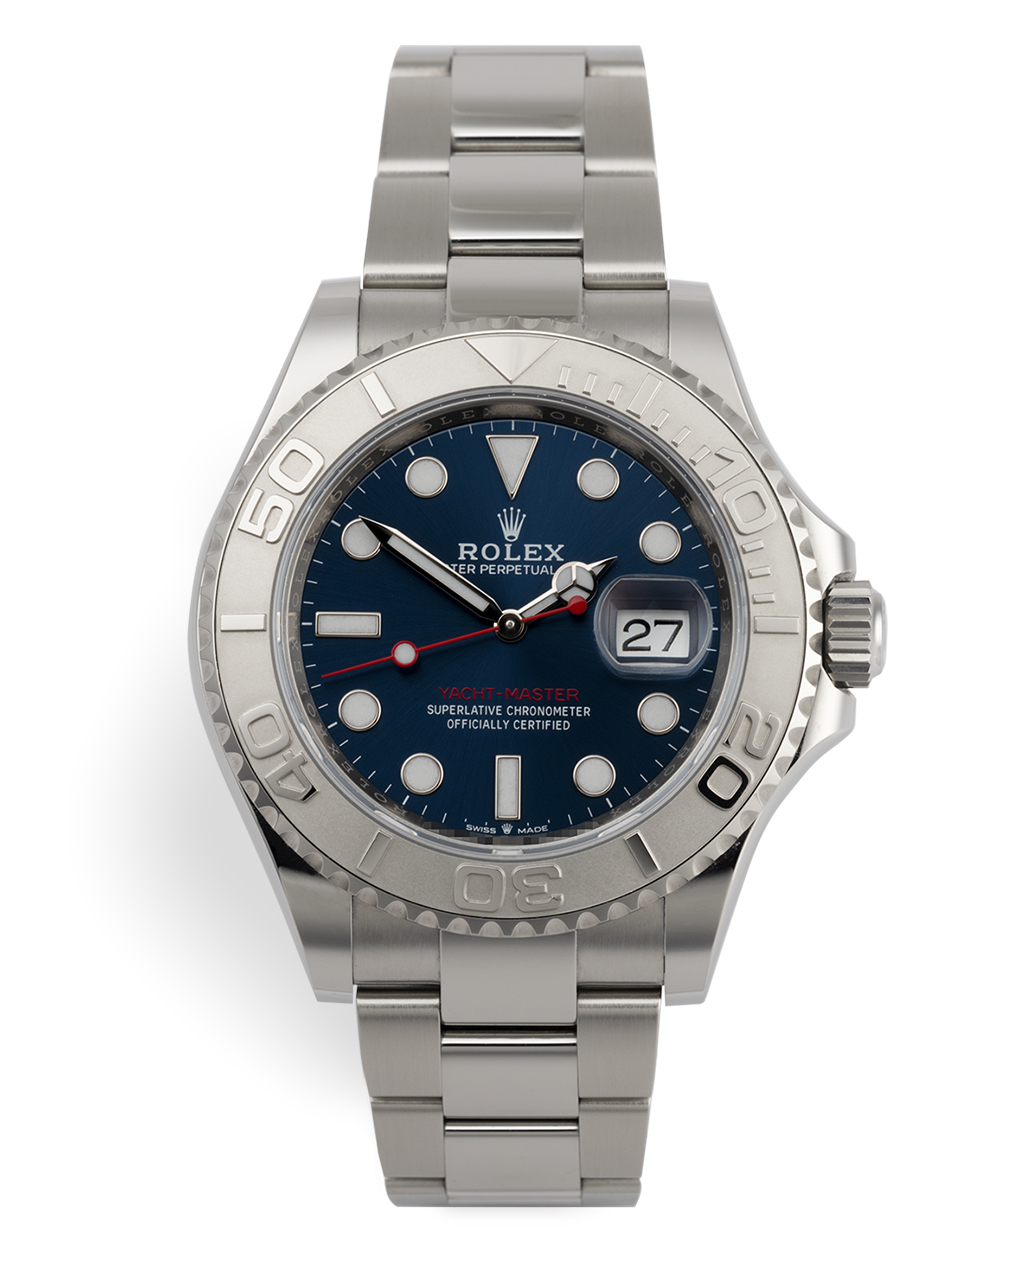 Rolex Yacht-Master Watches | ref 126622 | Rolex Warranty to 2025 | The ...